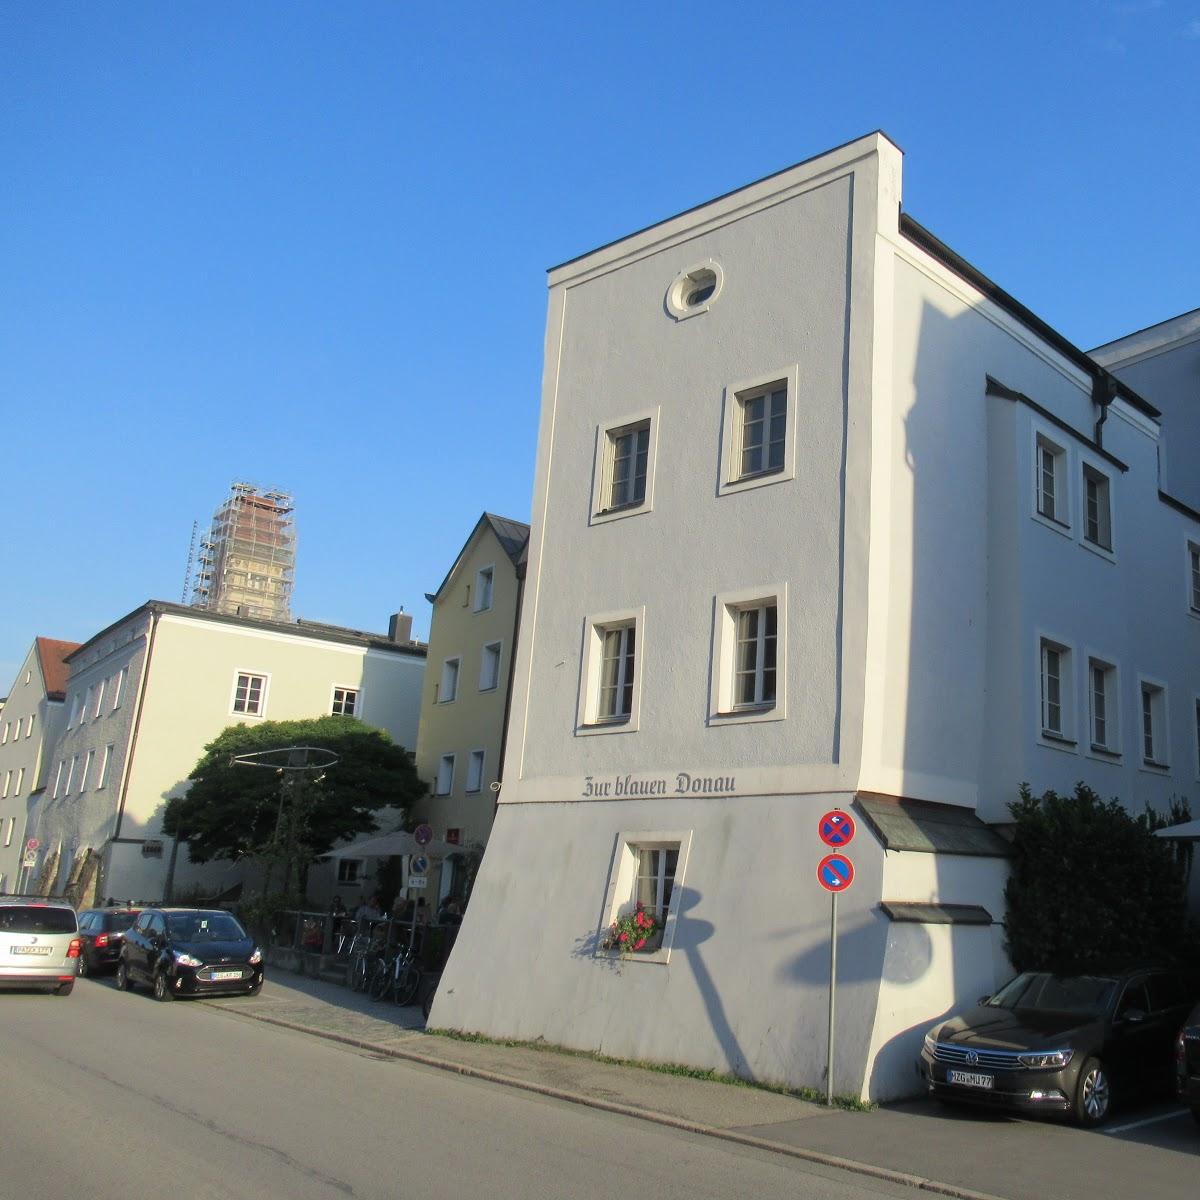 Restaurant "Zur Blauen Donau" in Passau